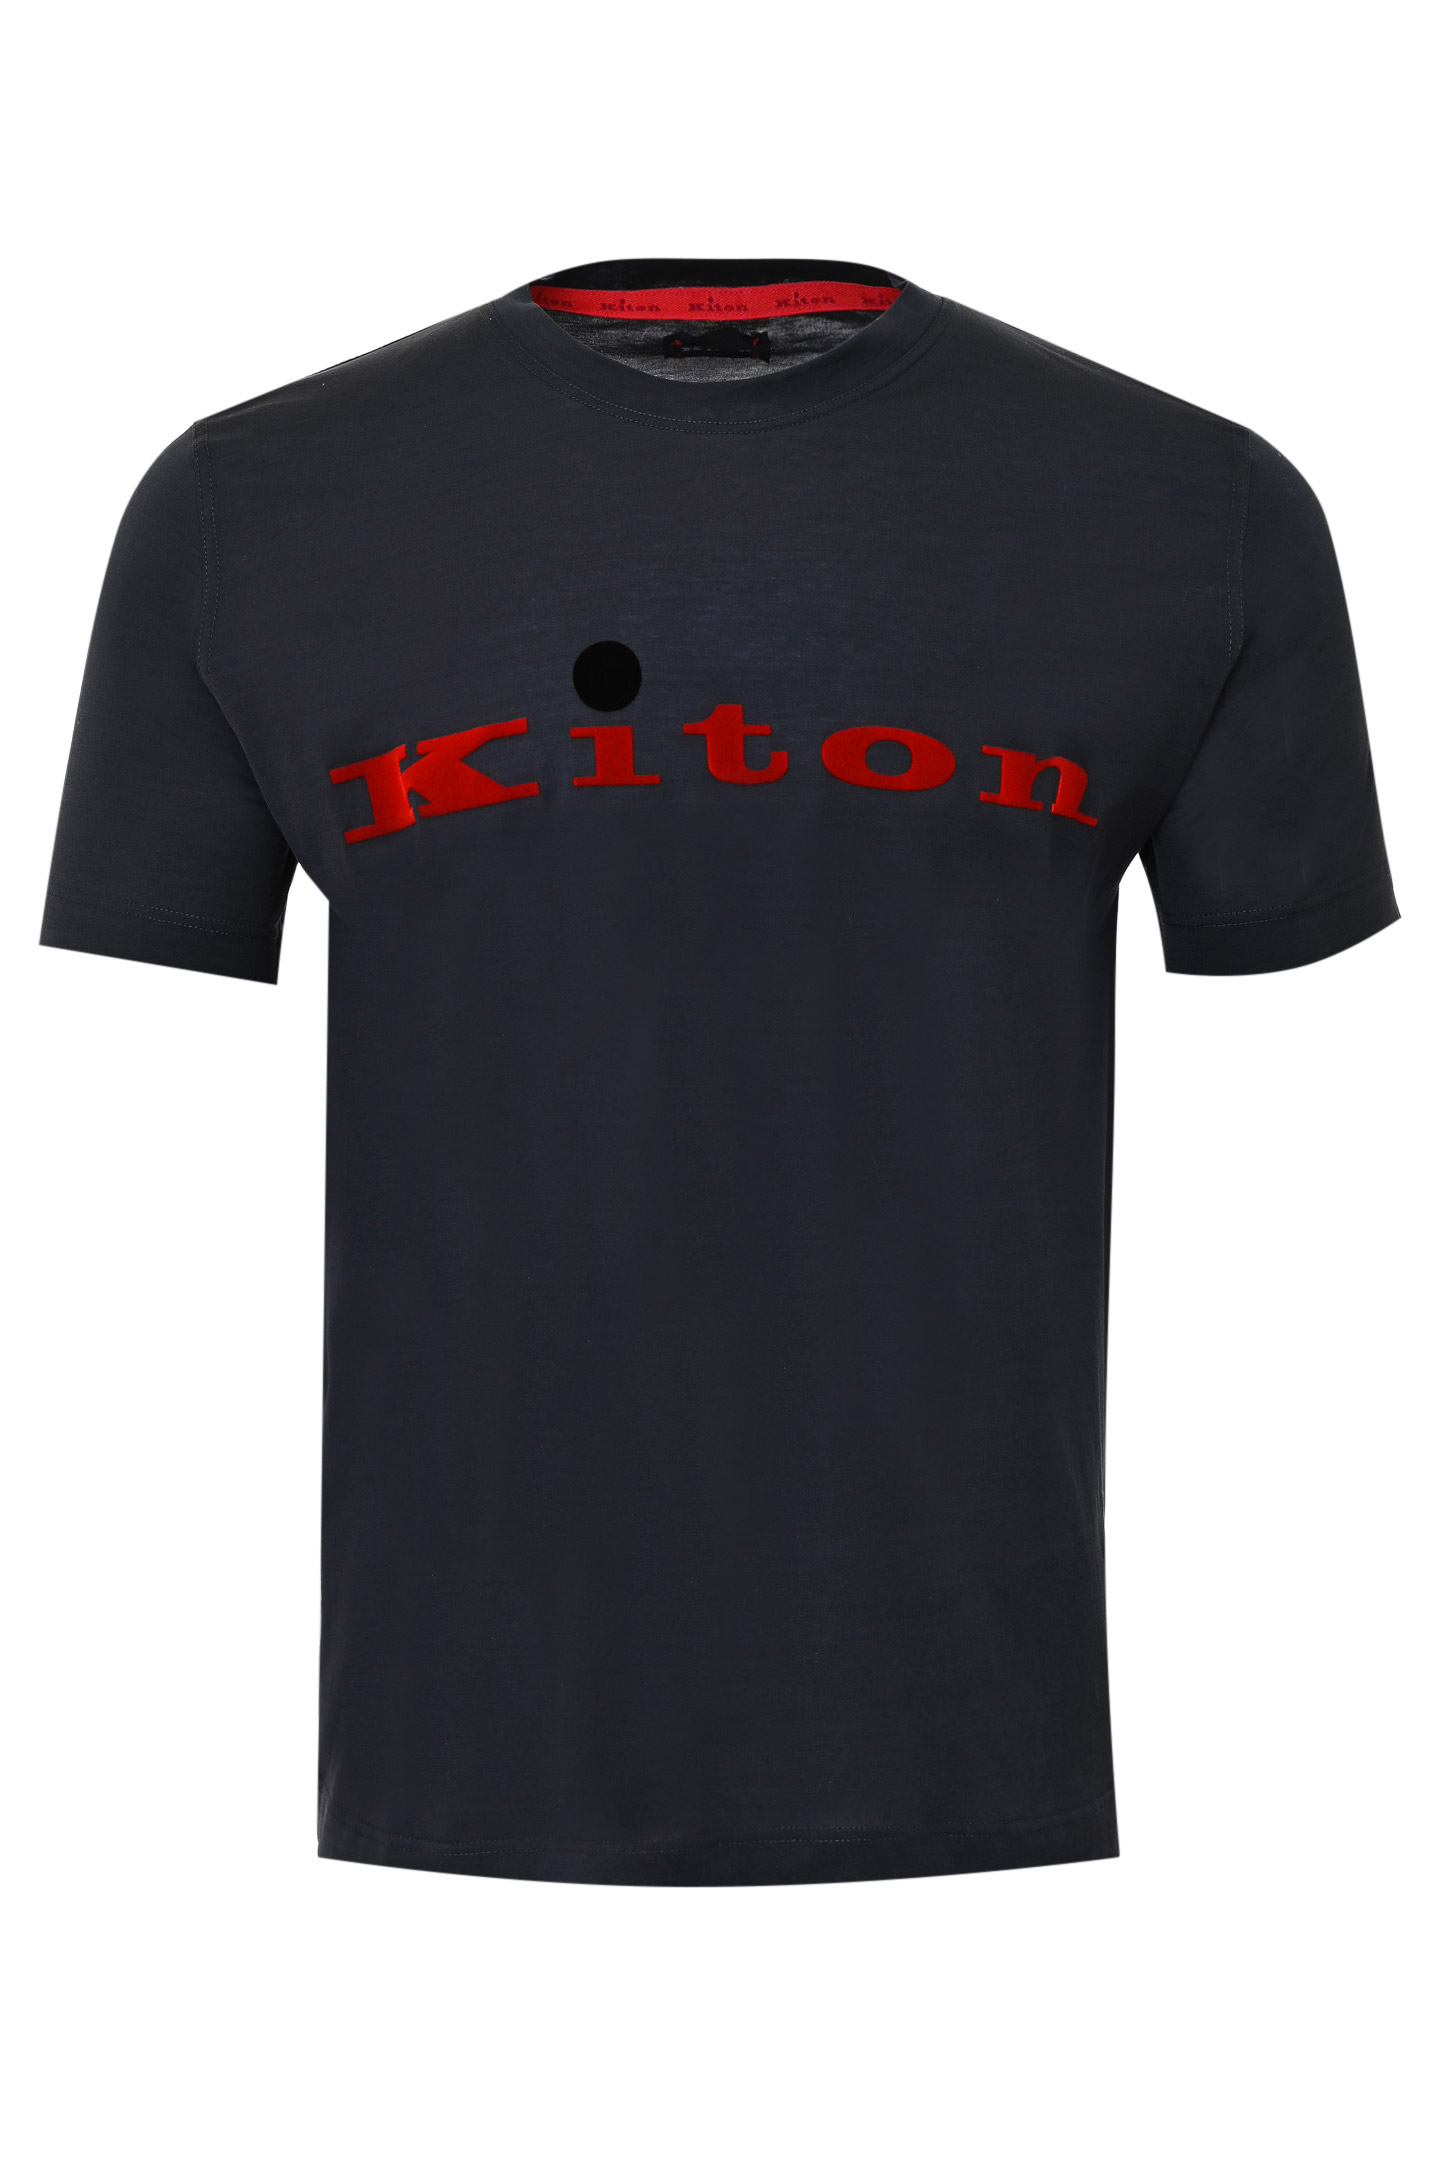 Футболка KITON UK1164W21, цвет: Черный, Мужской